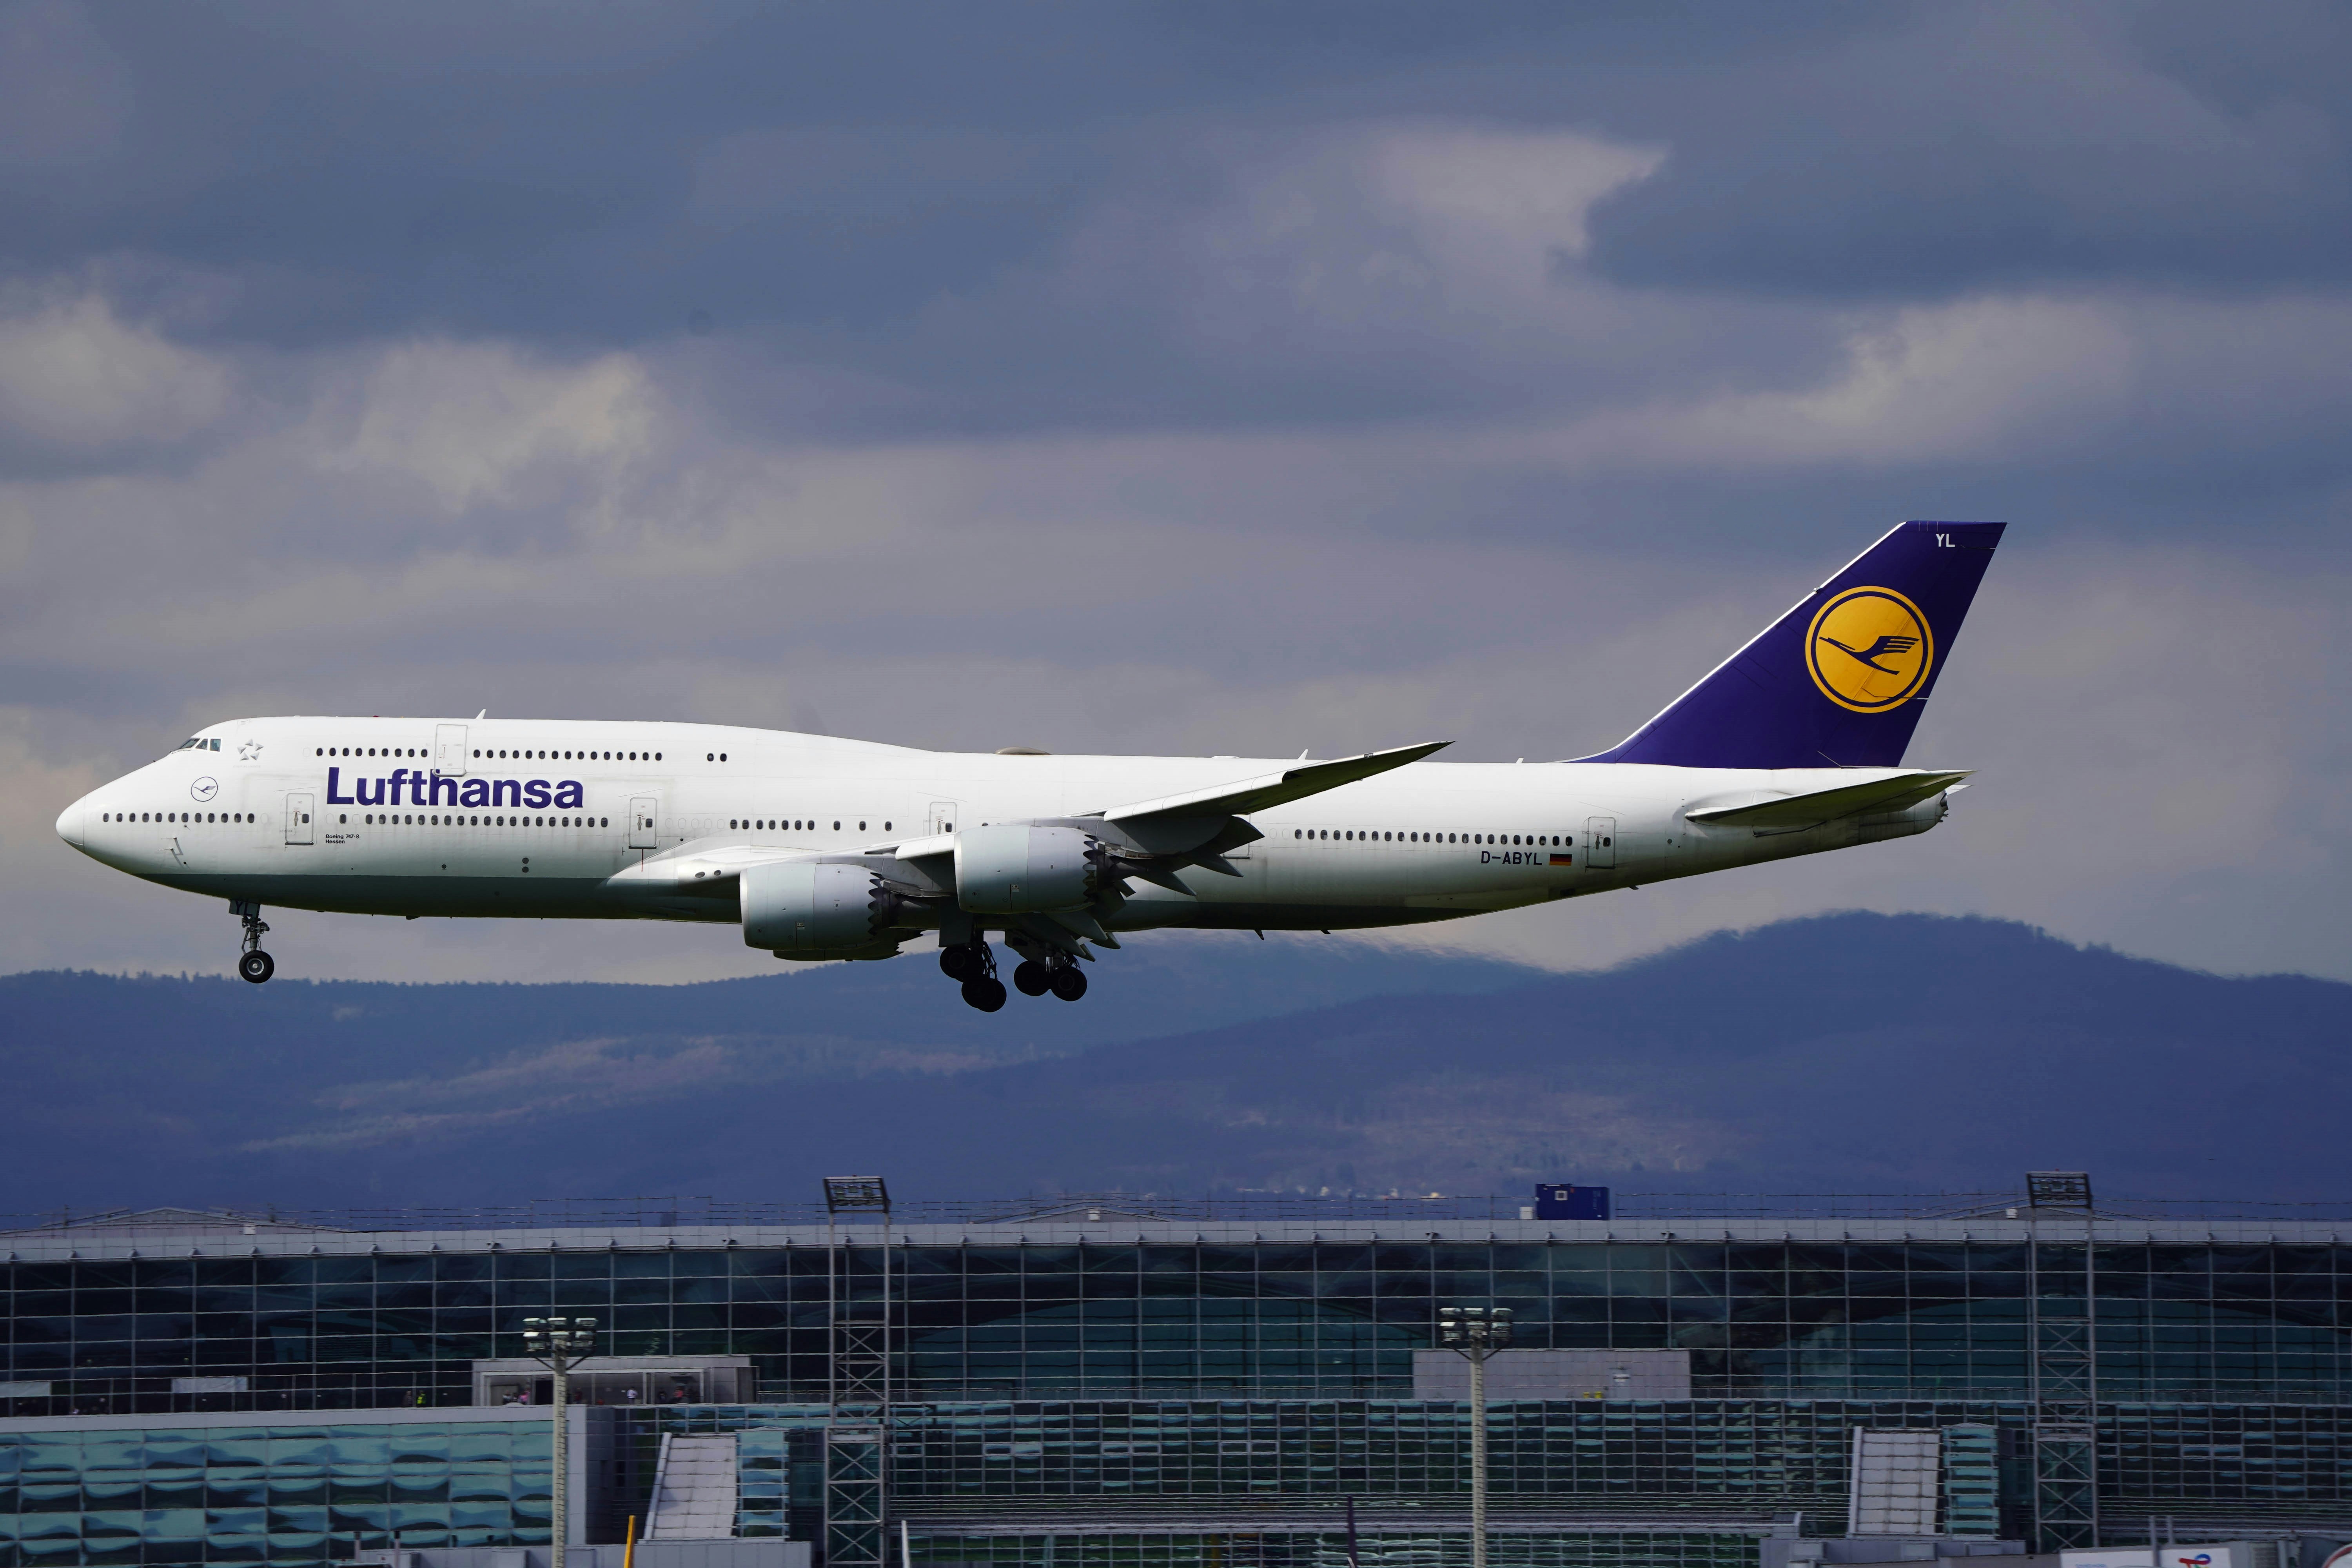 Lufthansa Boeing 747 before touchdown at Frankfurt Airport!